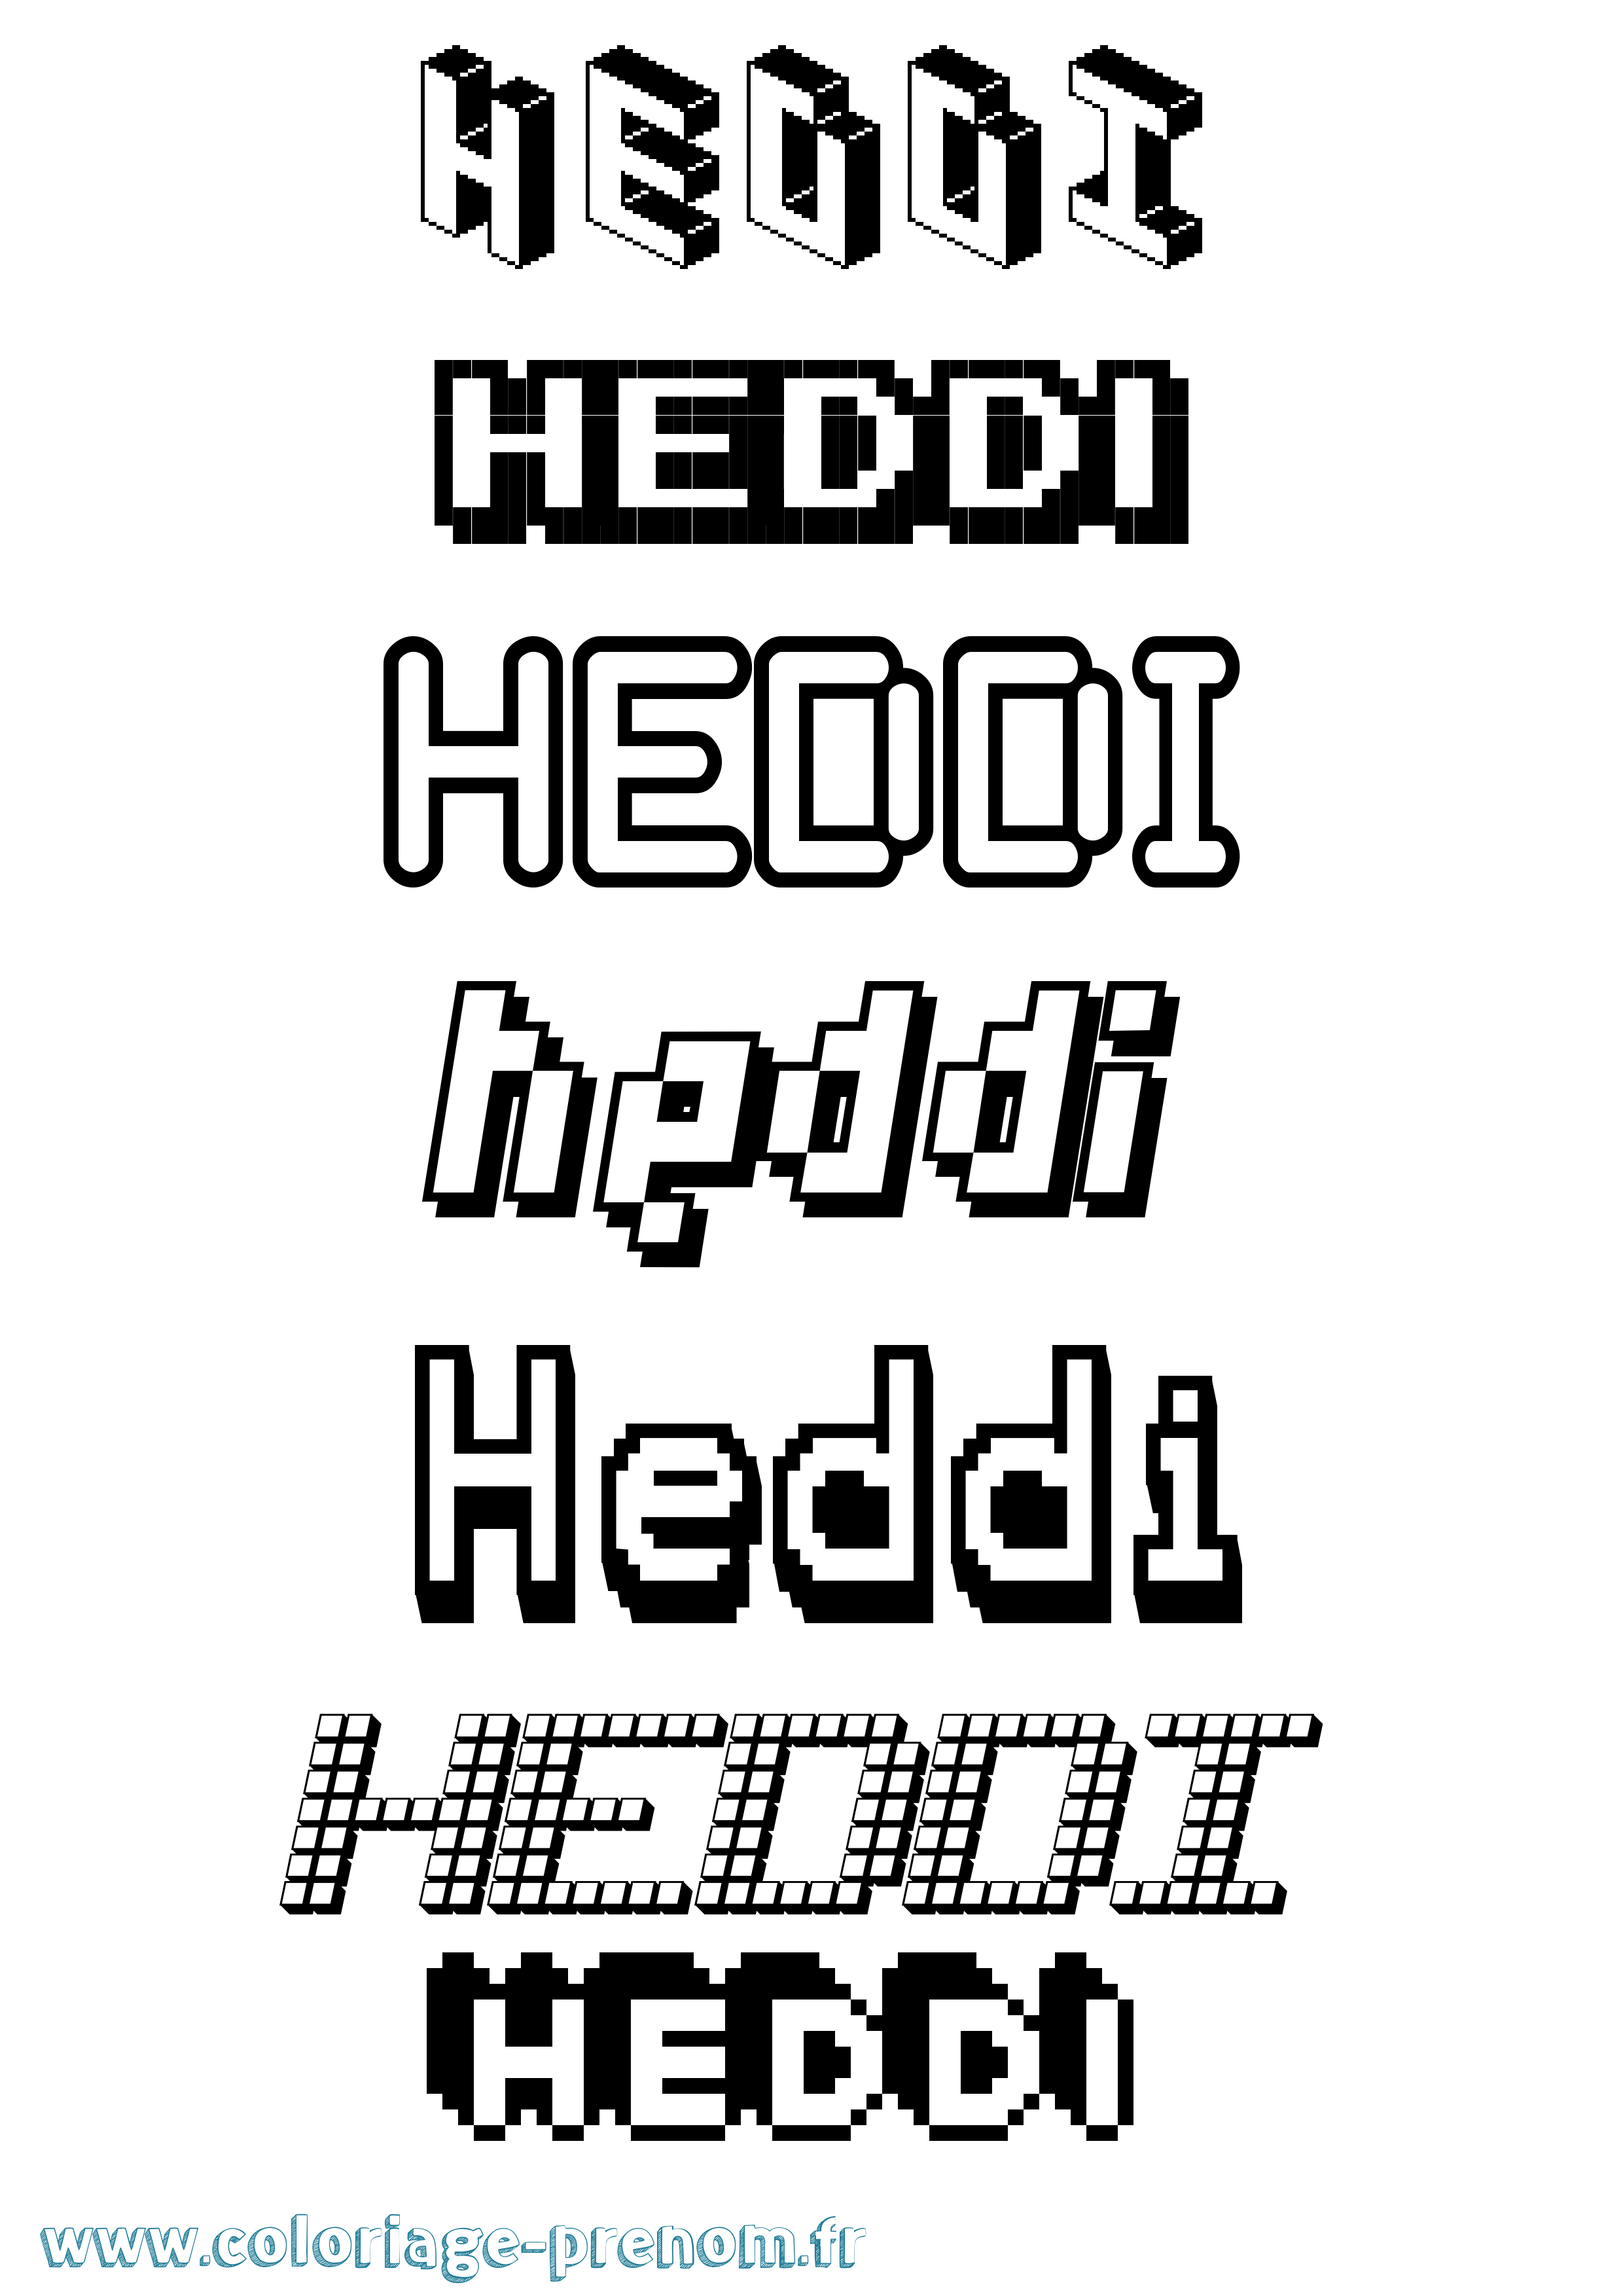 Coloriage prénom Heddi Pixel